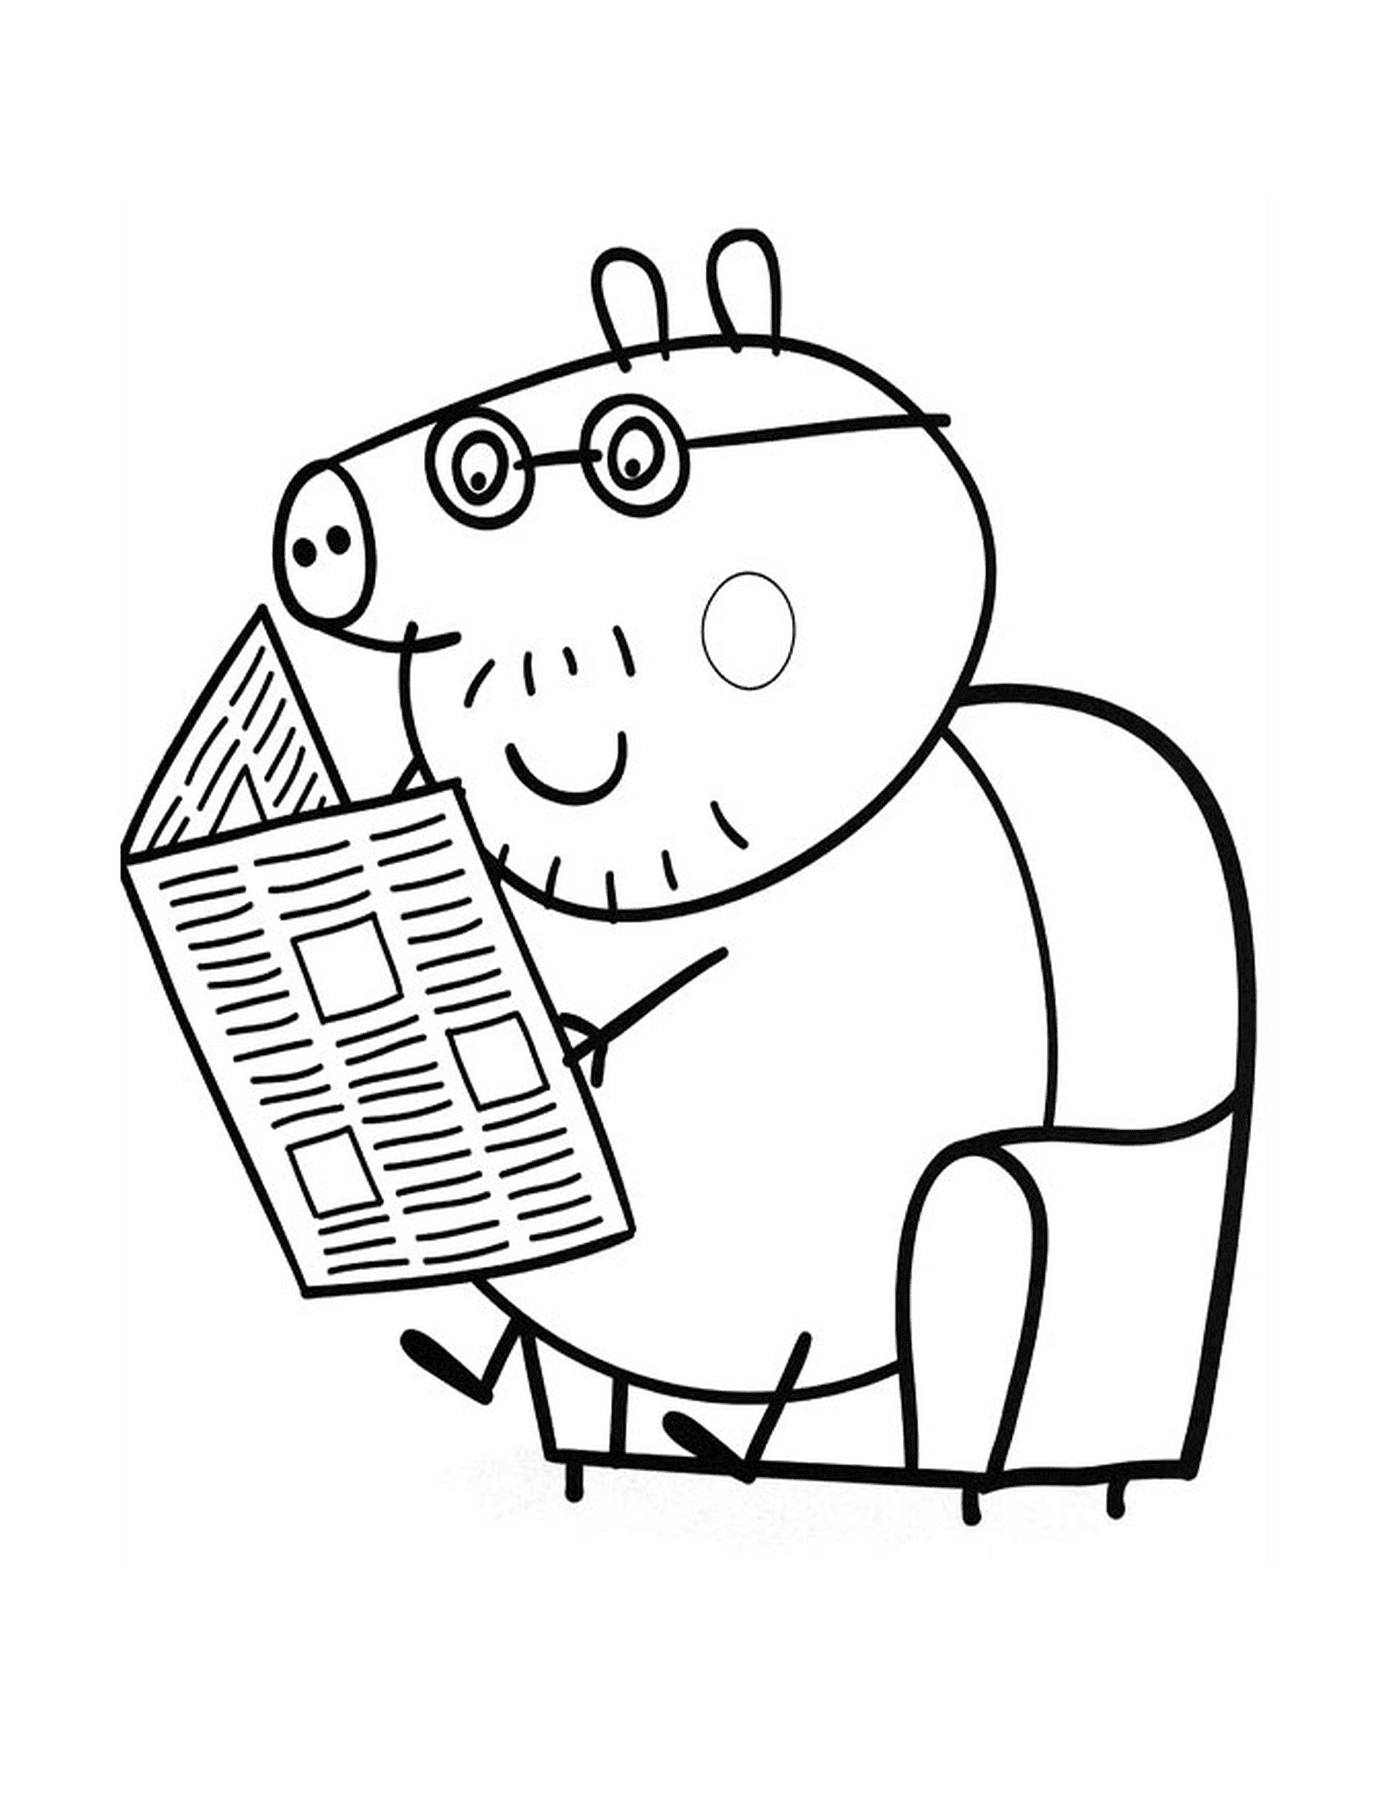  Un maiale che legge un giornale 